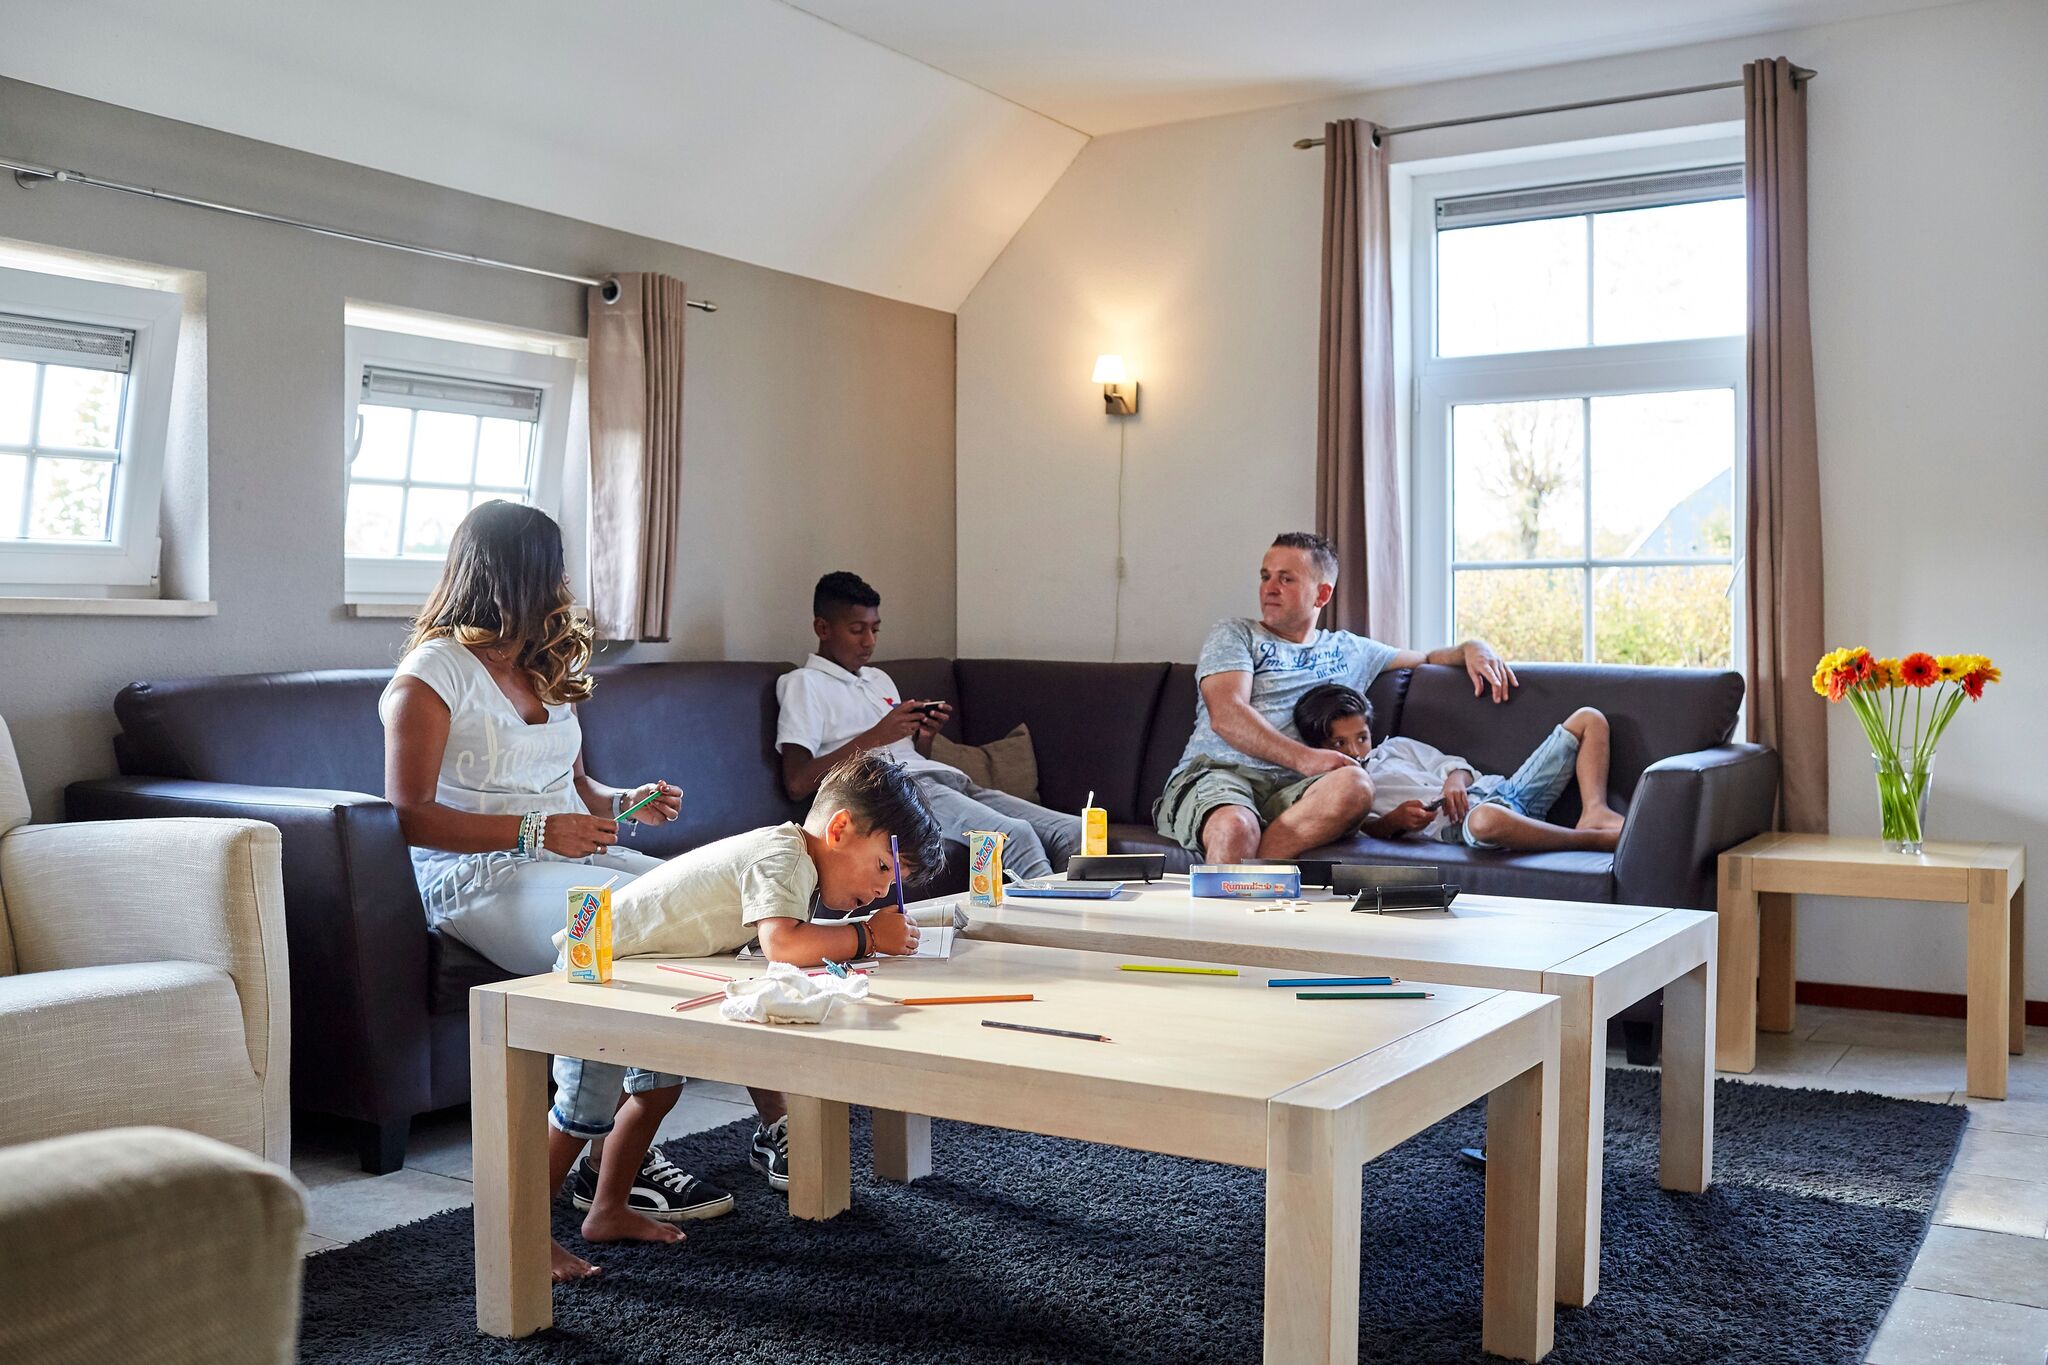 Ferme-villa cosy et familiale dans le Limbourg